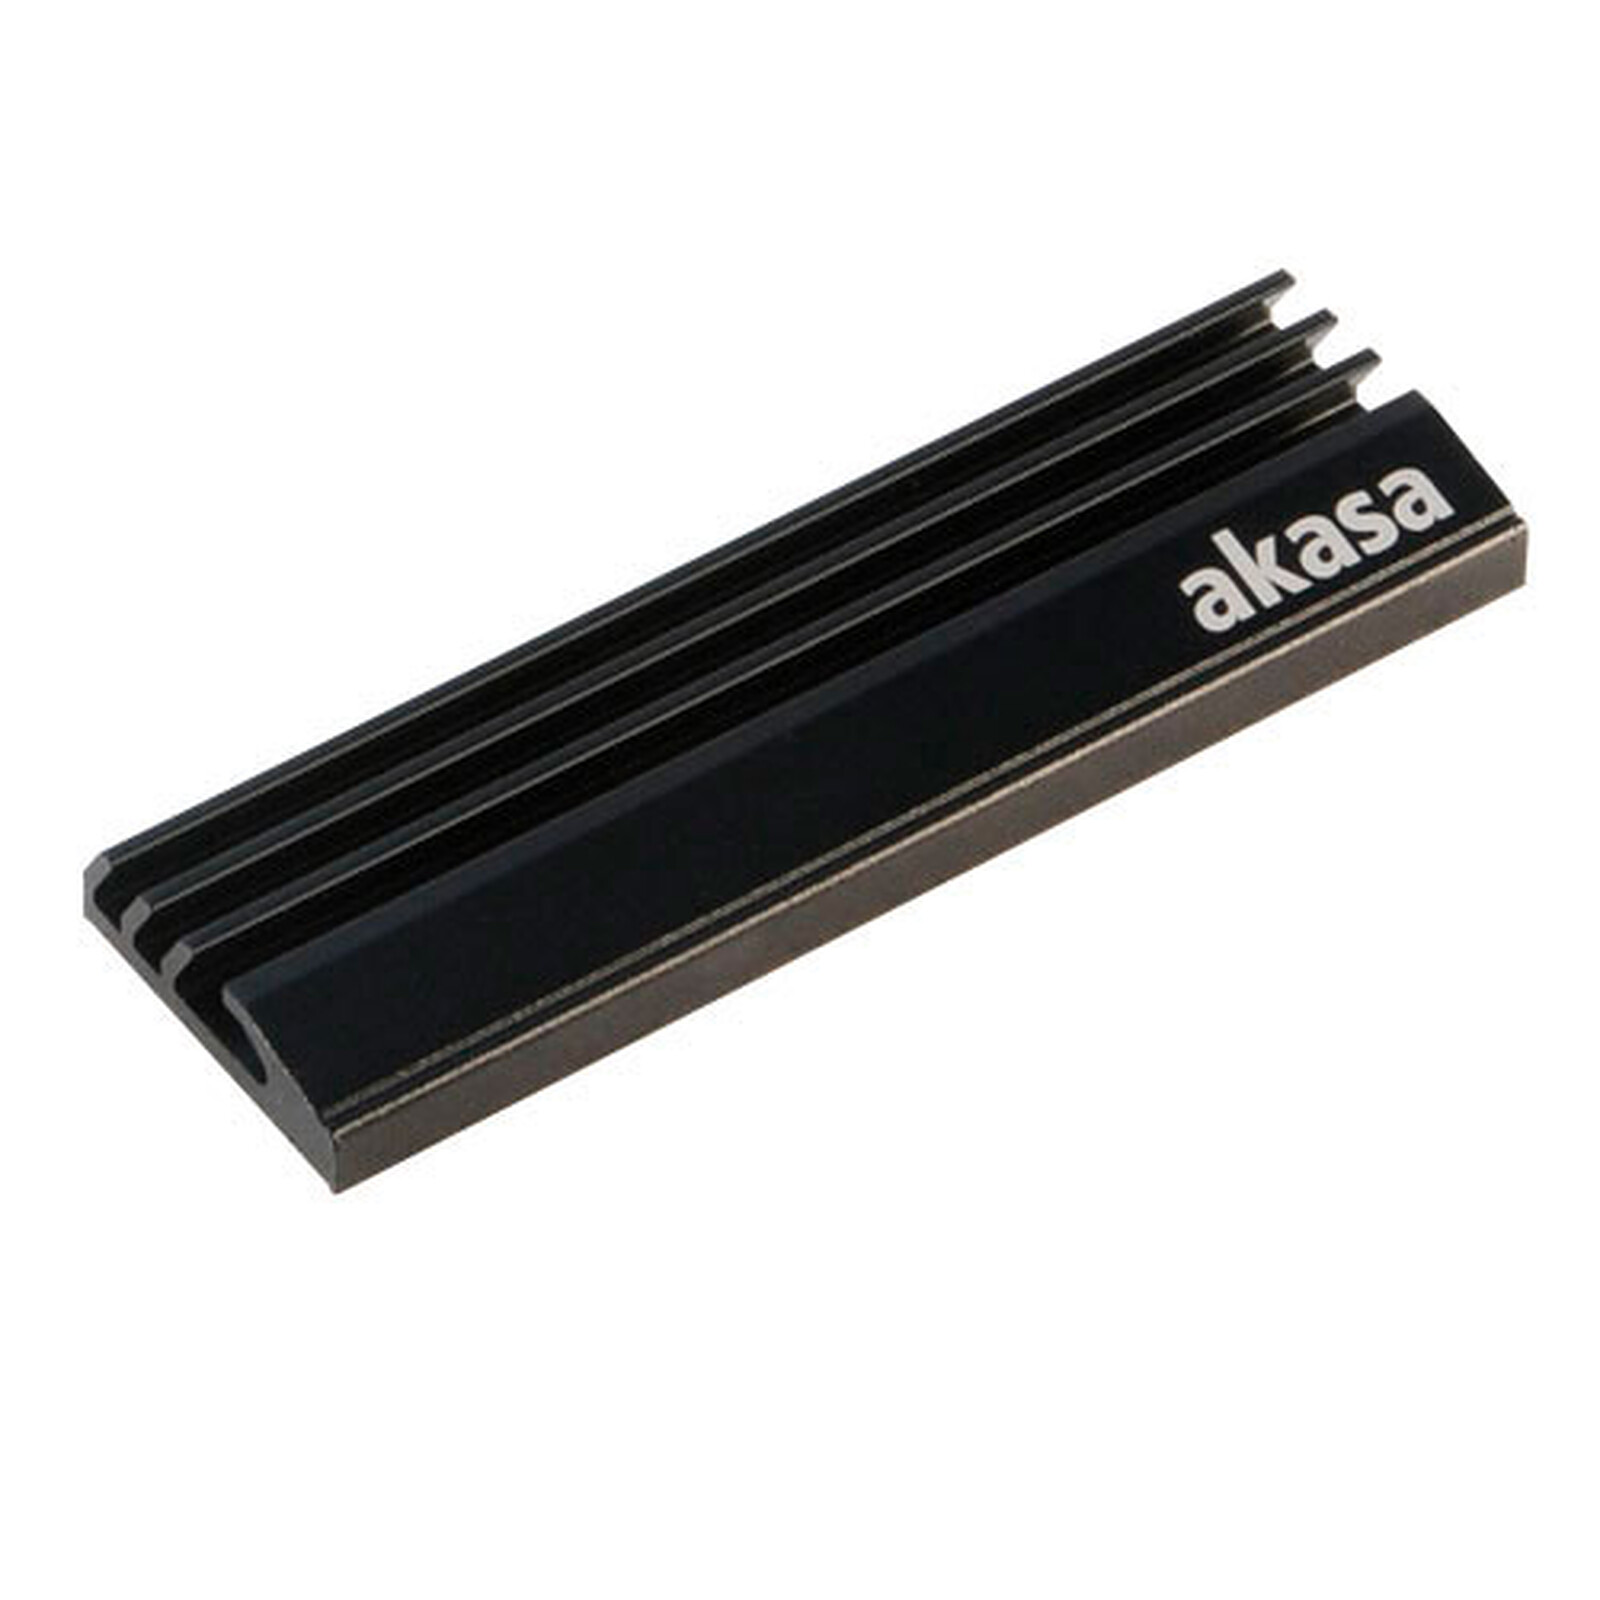 Dissipateur thermique Ultra-fin M.2 SSD M2 2280 disque dur SSD en  aluminium, dissipateur thermique de refroidissement pour PCIE 2280 SSD -  AliExpress